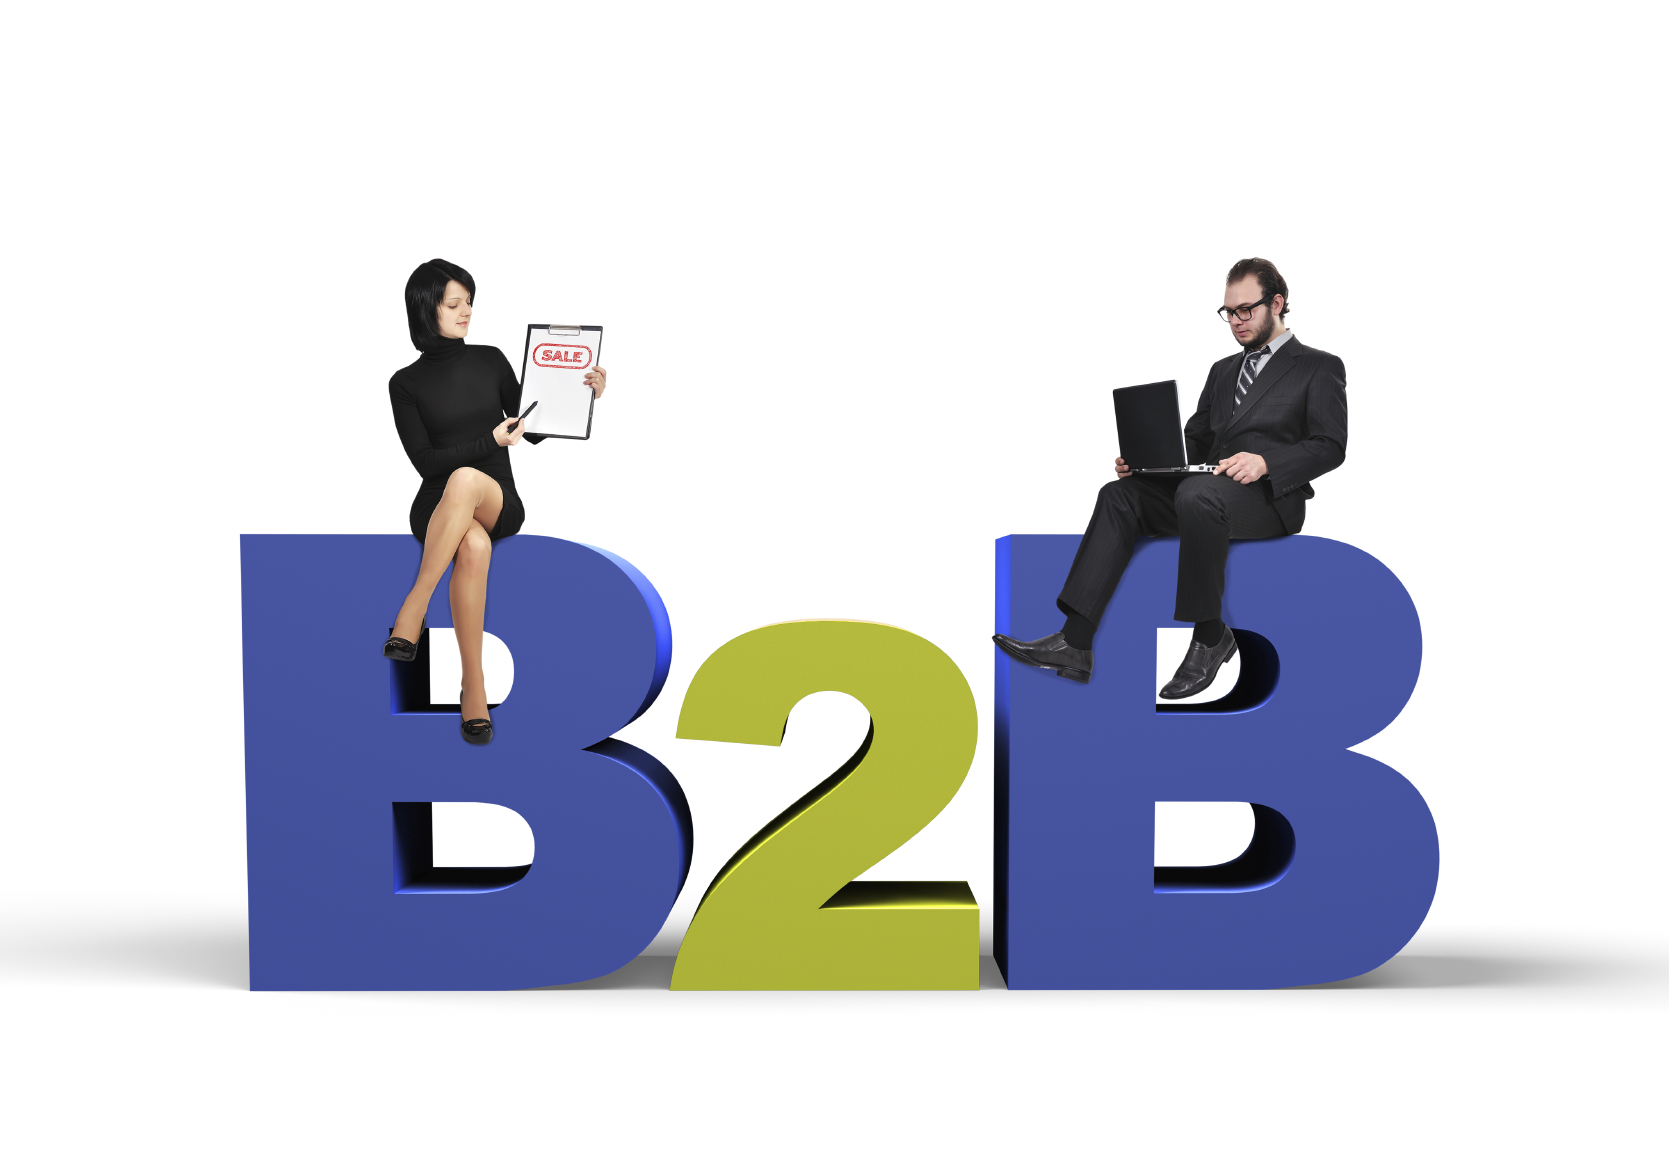 Características que definen a las estrategias de marketing B2B